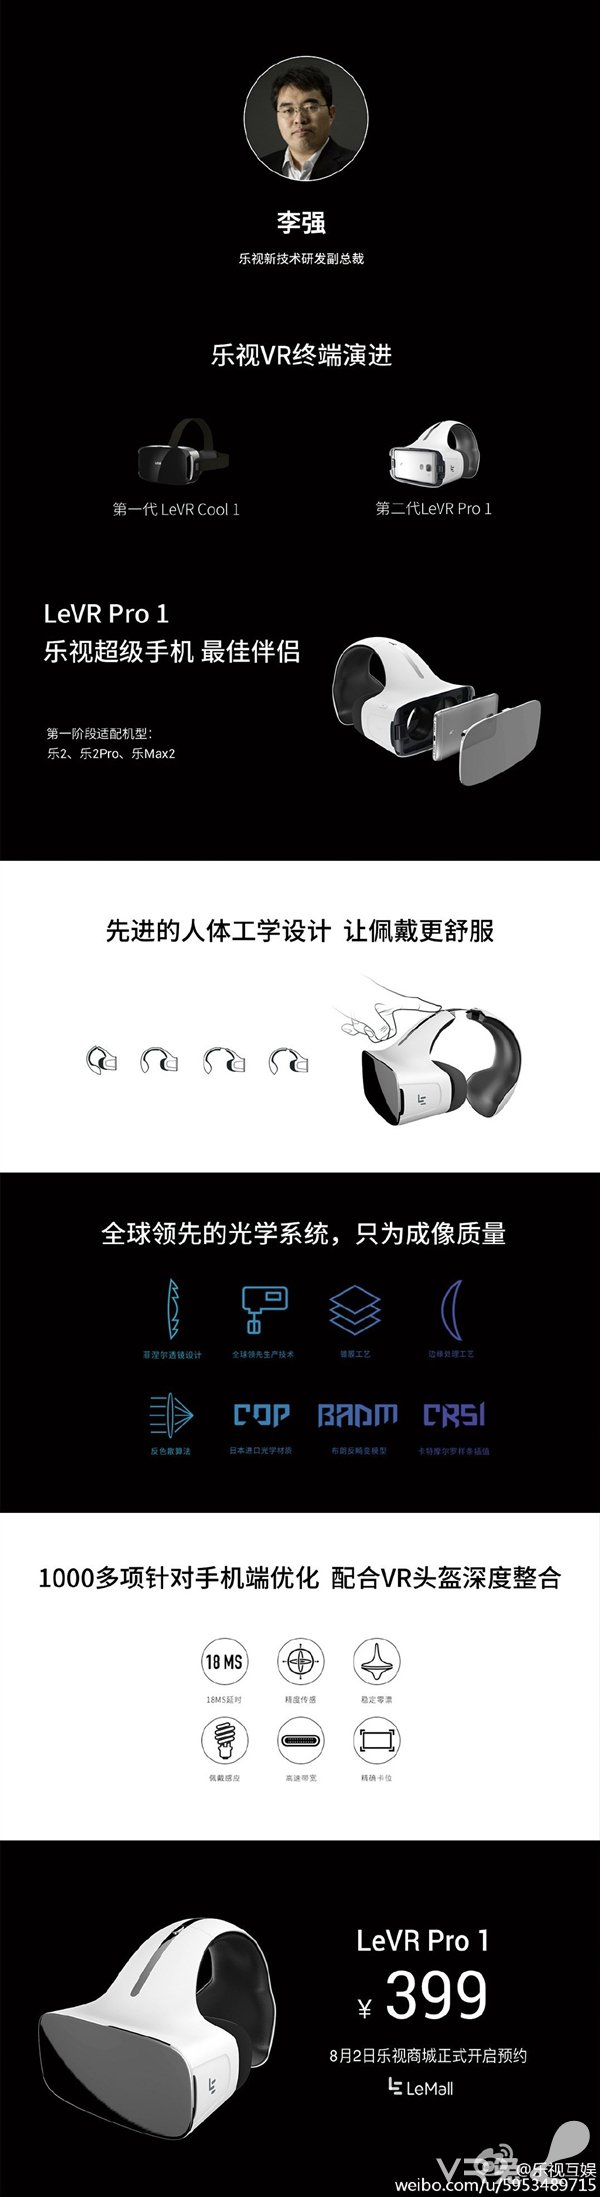 乐视第二代VR头盔LeVR Pro 1发布：399元/头带大亮